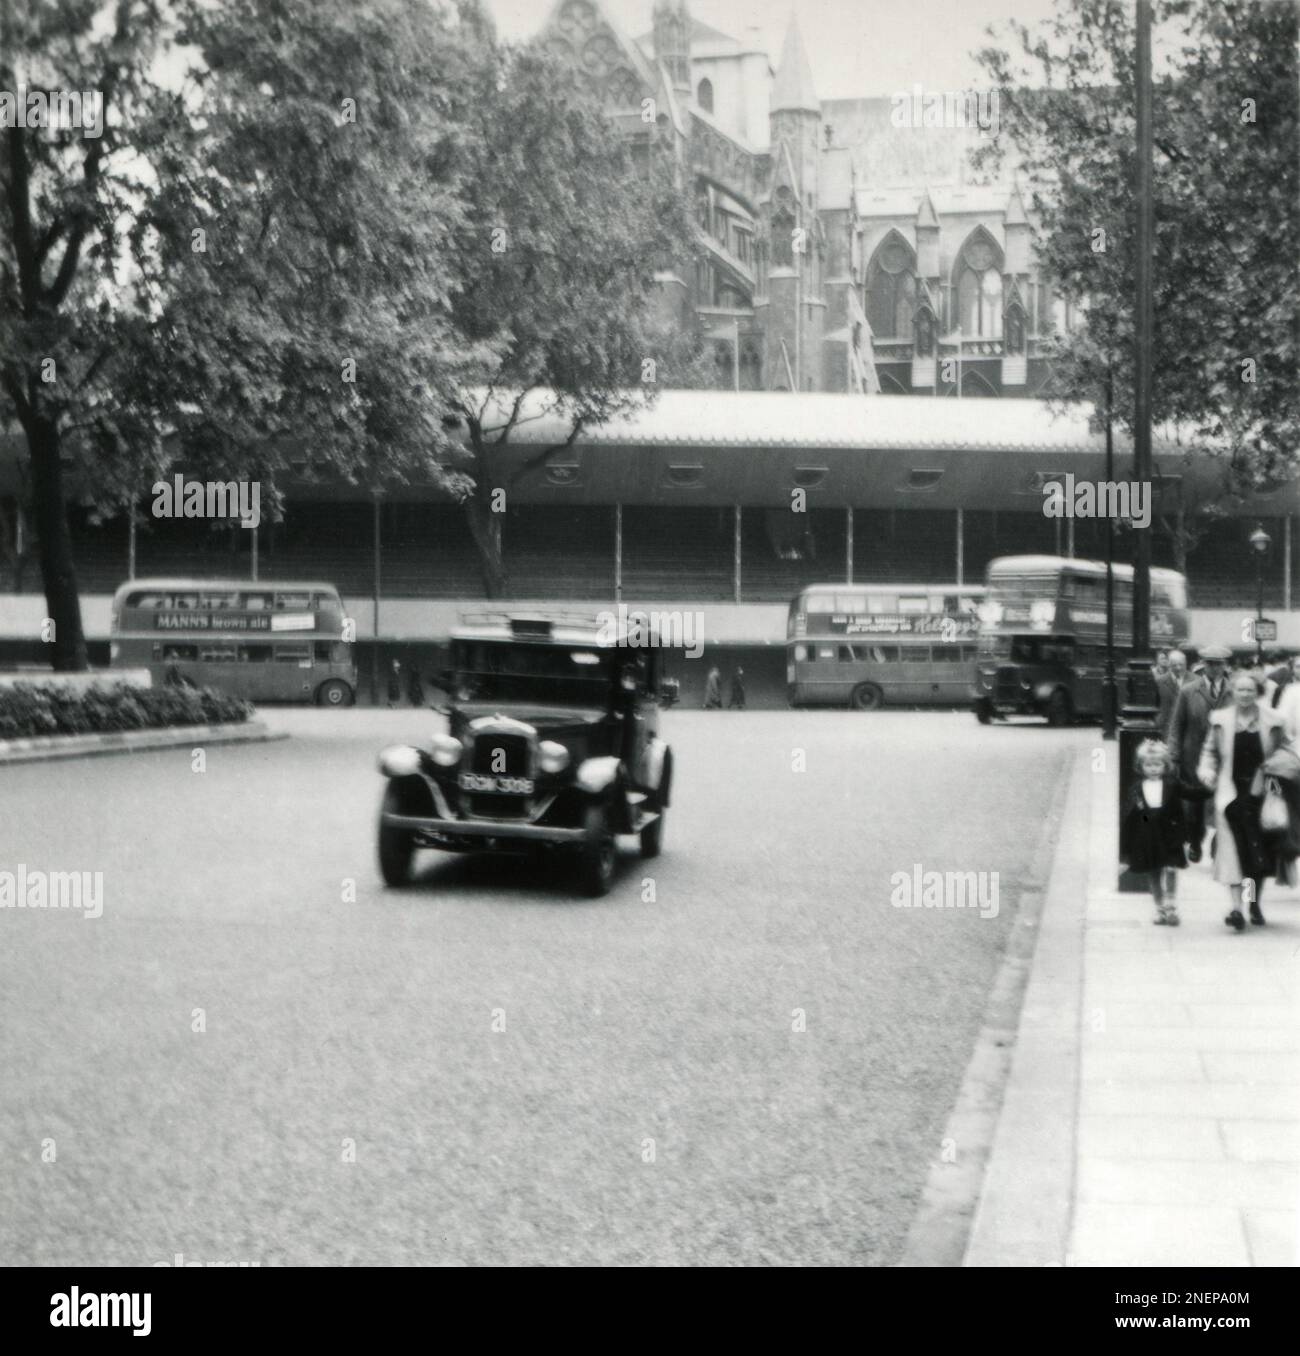 London, England. 1953. Blick vom Parlamentsplatz auf die vor der Westminster Abbey errichteten temporären Stände, insbesondere zur Krönung von Königin Elizabeth II., die am 2. Juni 1953 stattfand. Londoner Busse fahren vorbei, und ein 1930er Austin London Taxicab befindet sich im Vordergrund. Stockfoto